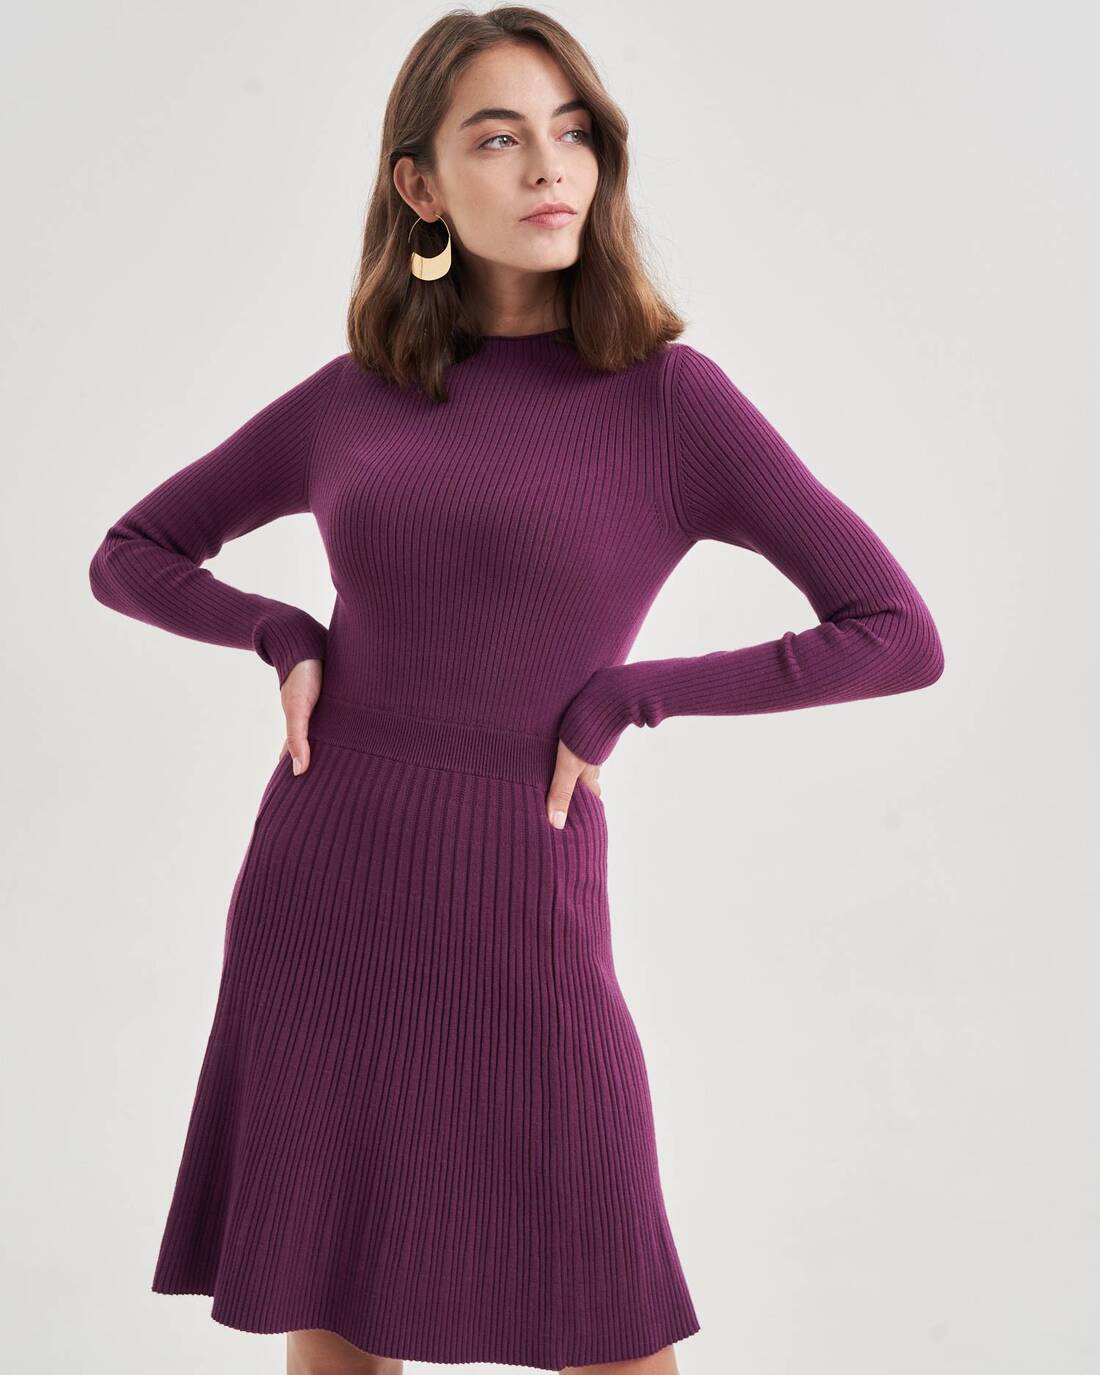 Knit mini dress